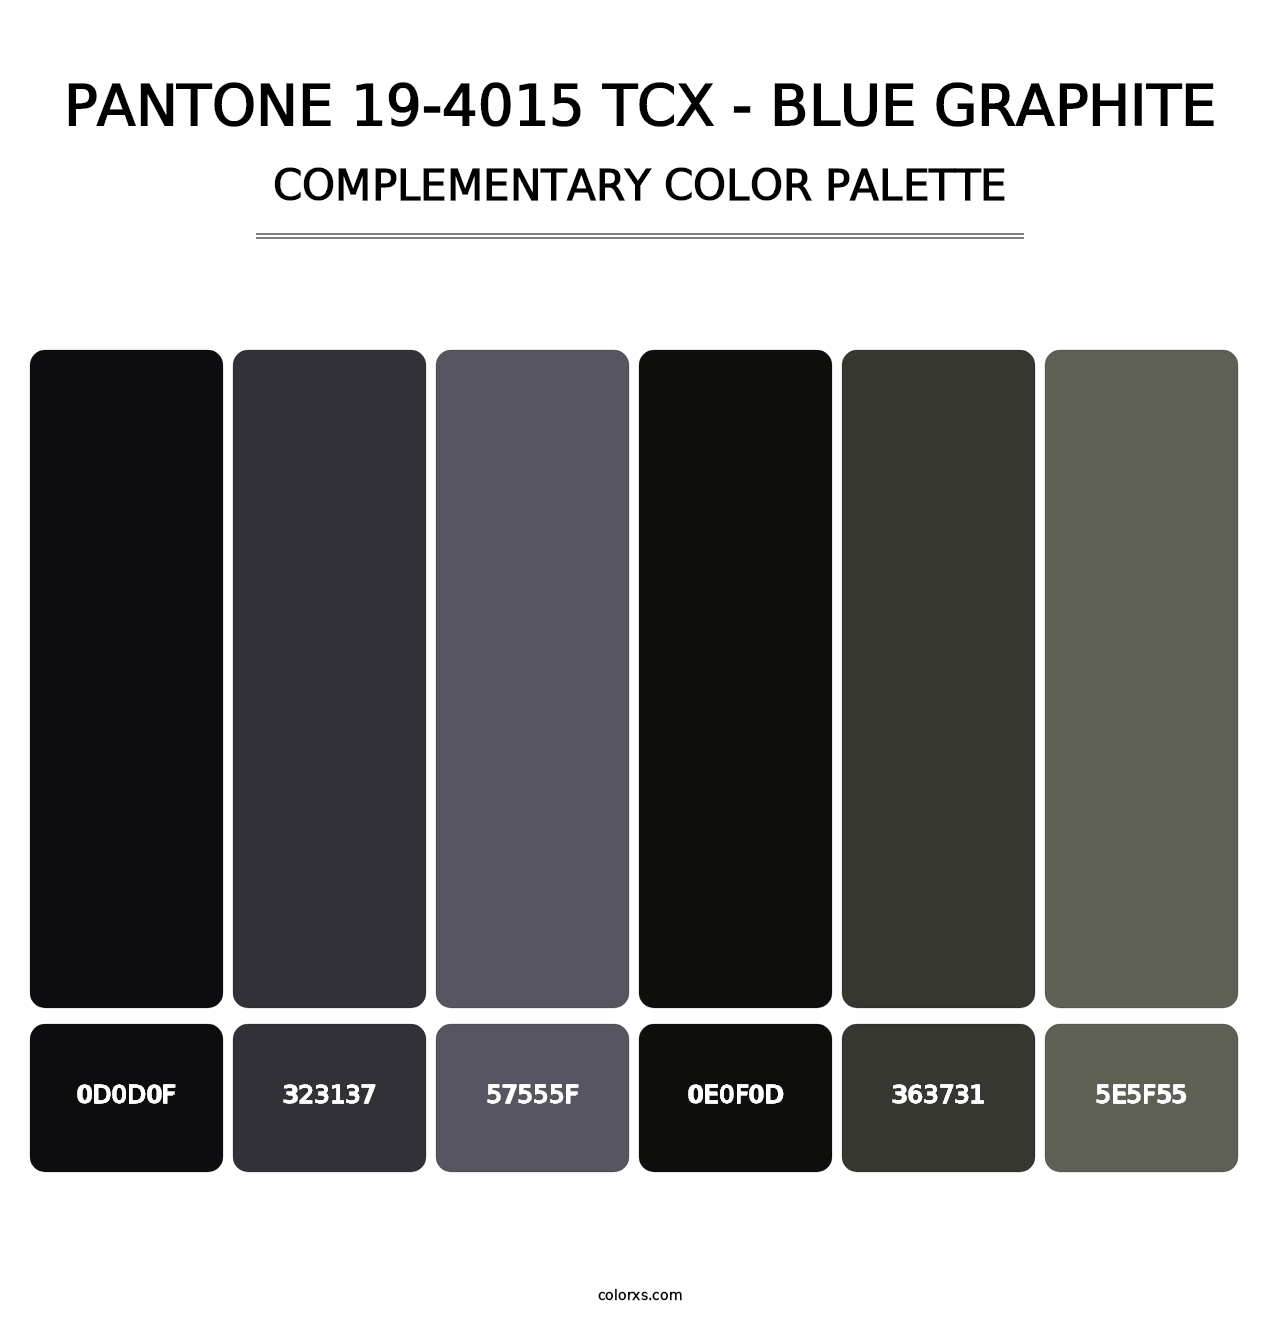 PANTONE 19-4015 TCX - Blue Graphite - Complementary Color Palette